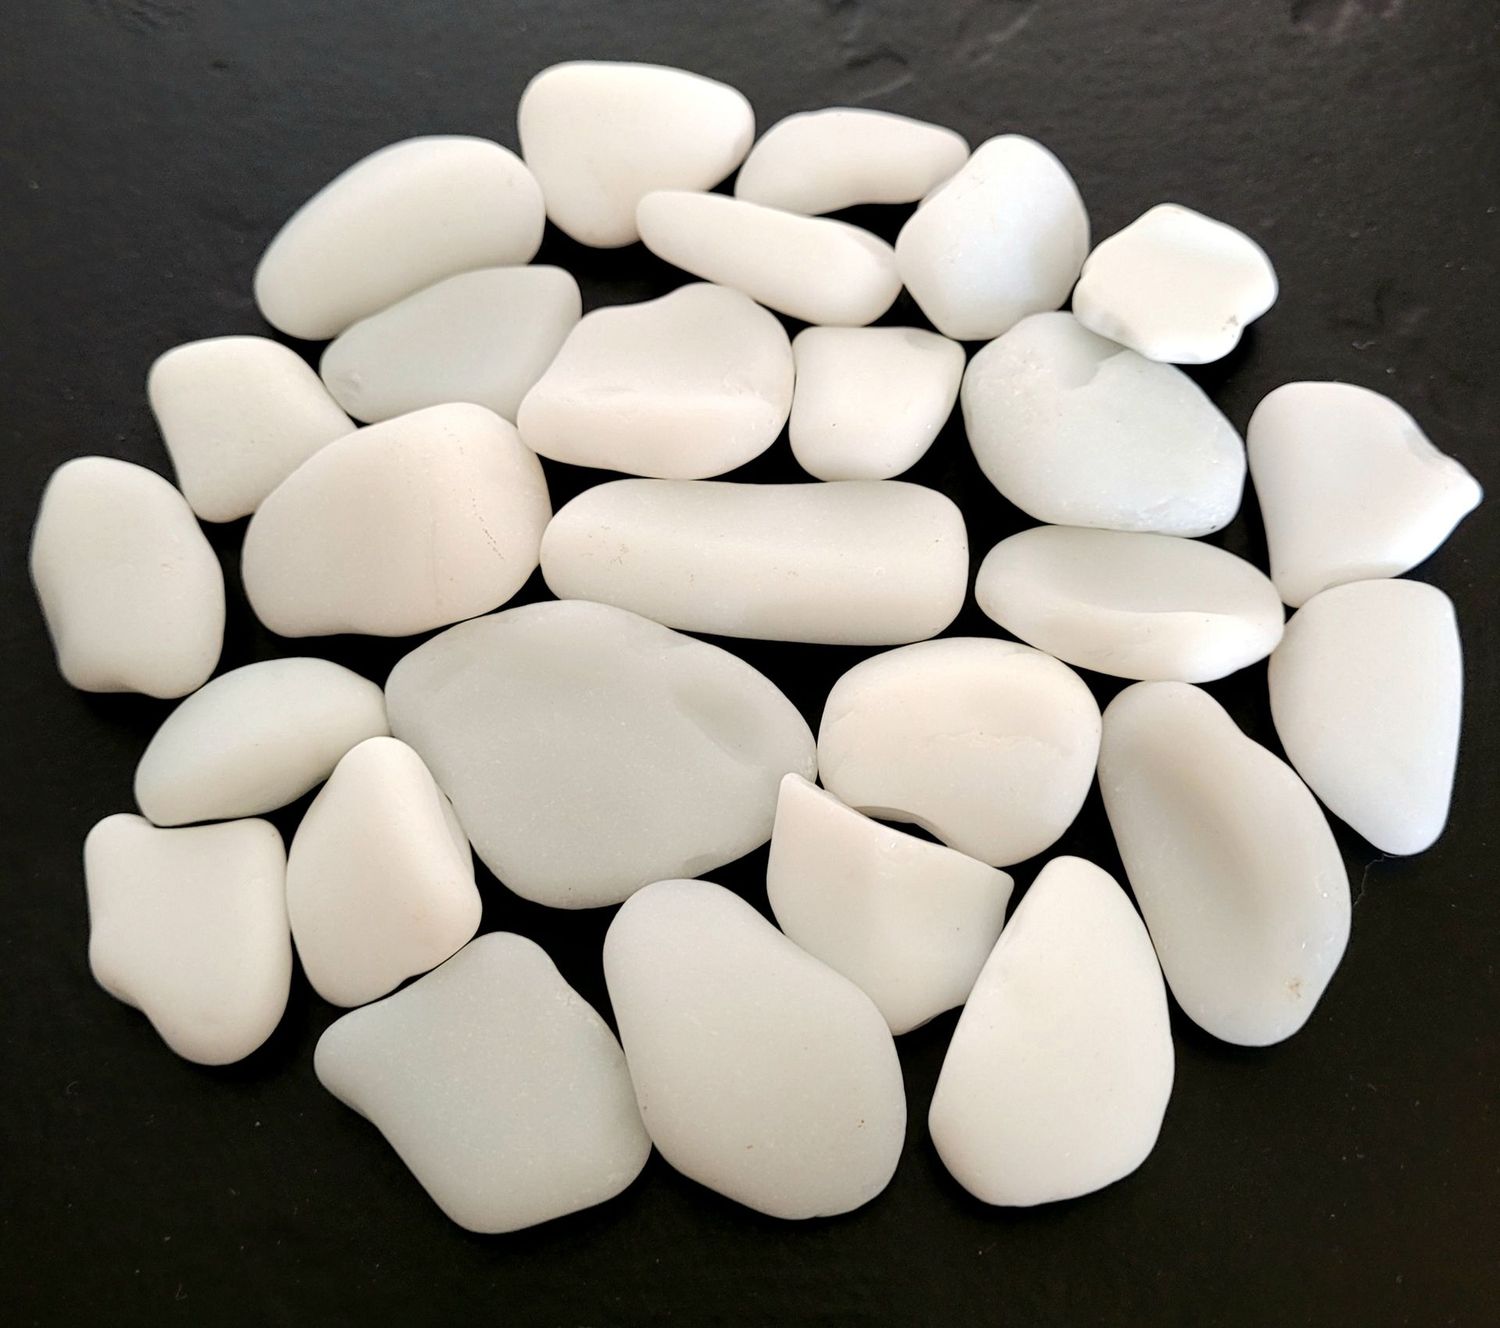 Larger White Milk Glass Pieces - 21pcs